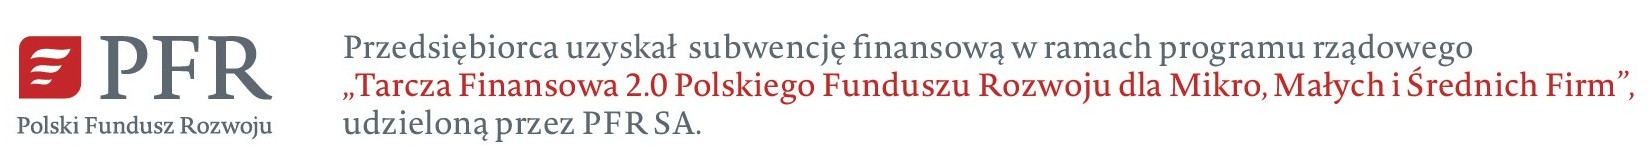 logo - PFR - Polski Fundusz Rozwoju